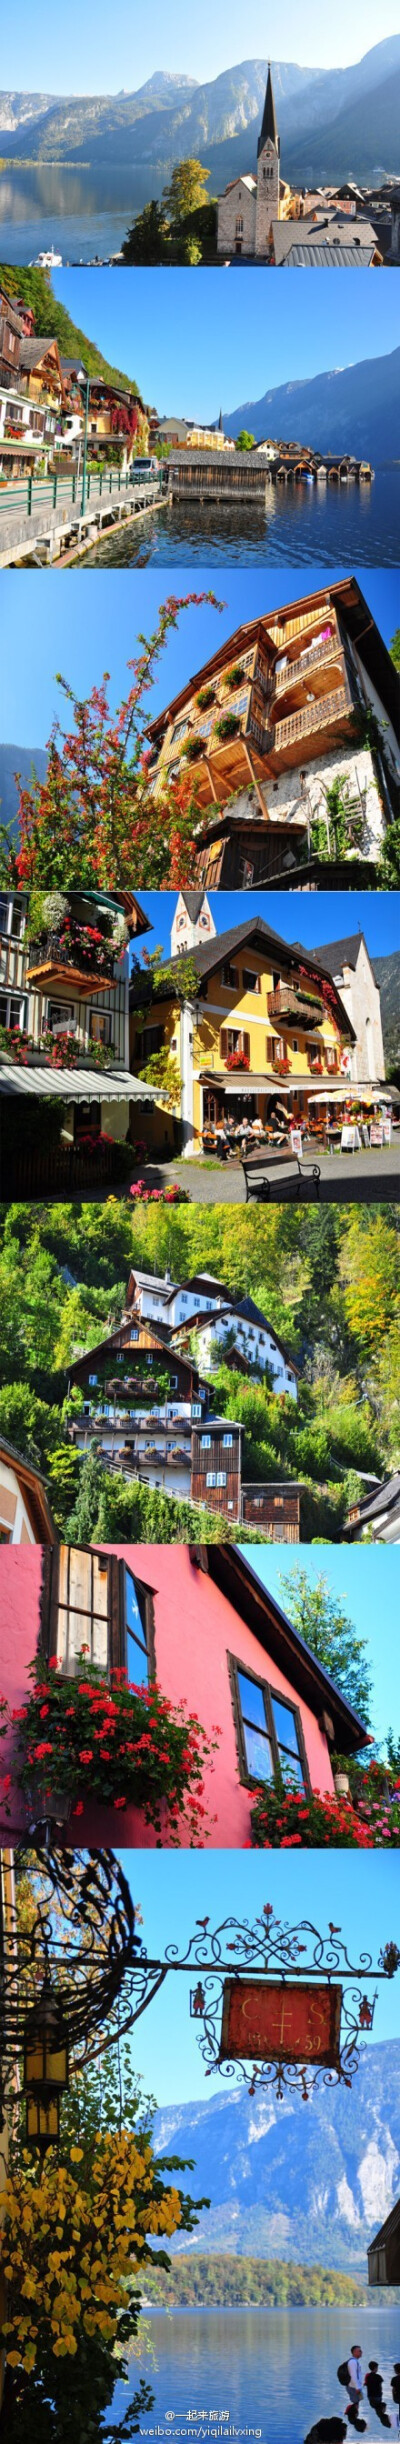 【奥地利－哈尔施塔特】一个精巧的，宛如童话般的小镇。这里的房子、街道都有远古的斑驳 ，湖边是梦幻仙境般的景色，路边林立的各式咖啡馆，这里也被称为世界上最美的湖畔小镇~